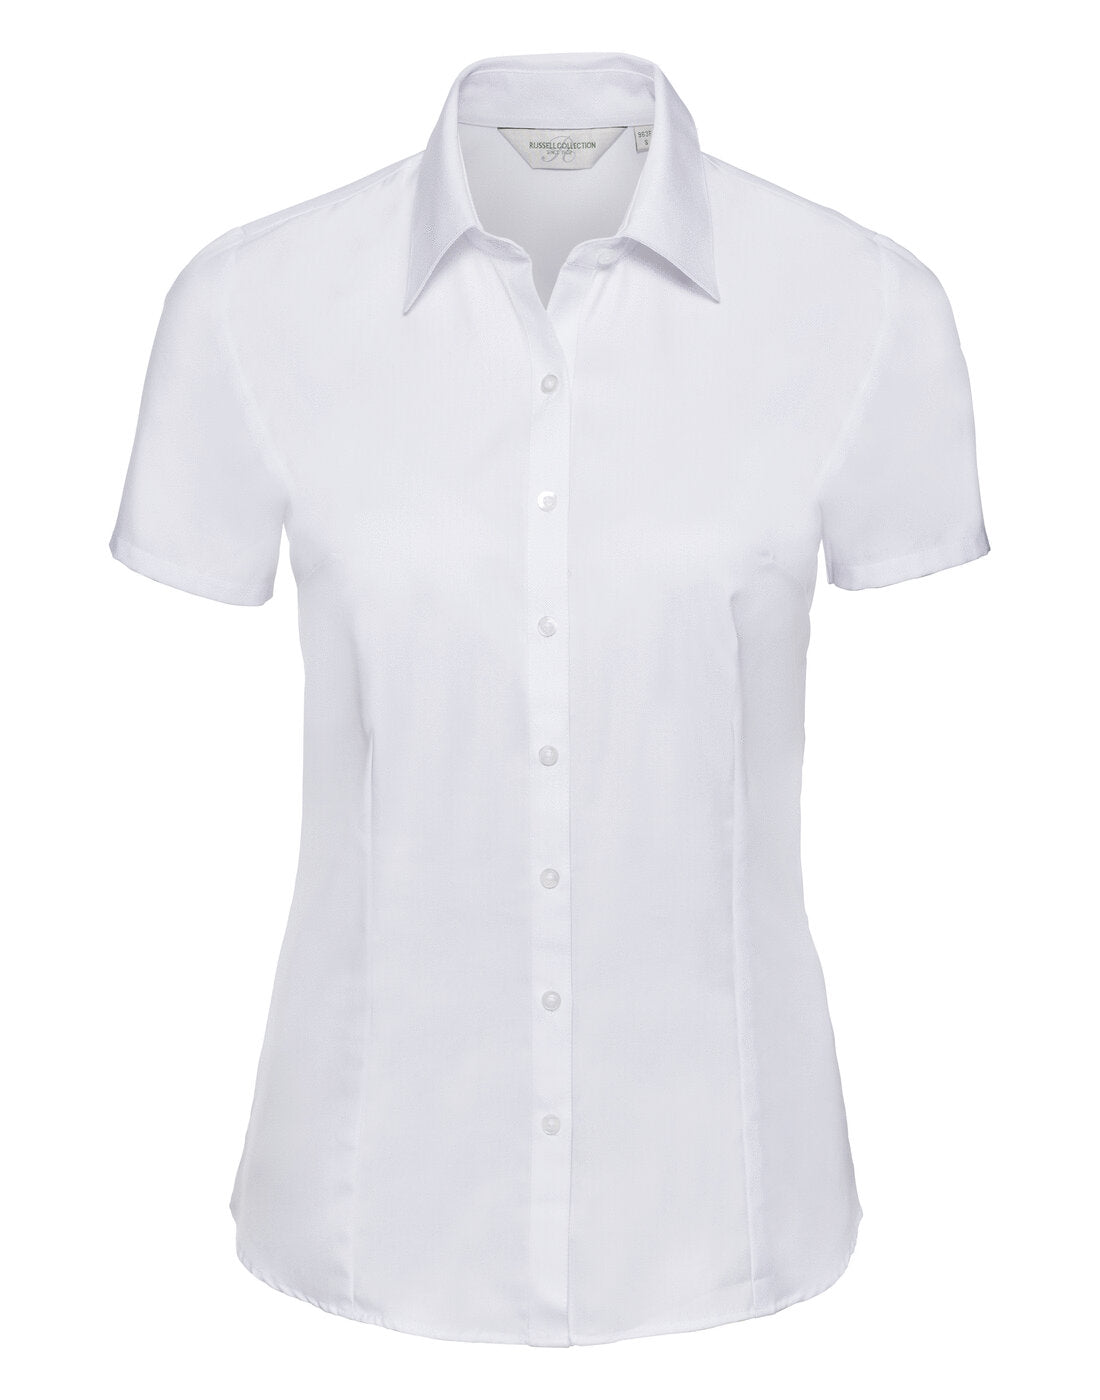 Russell Ladies Short Sleeve Herringbone Shirt White